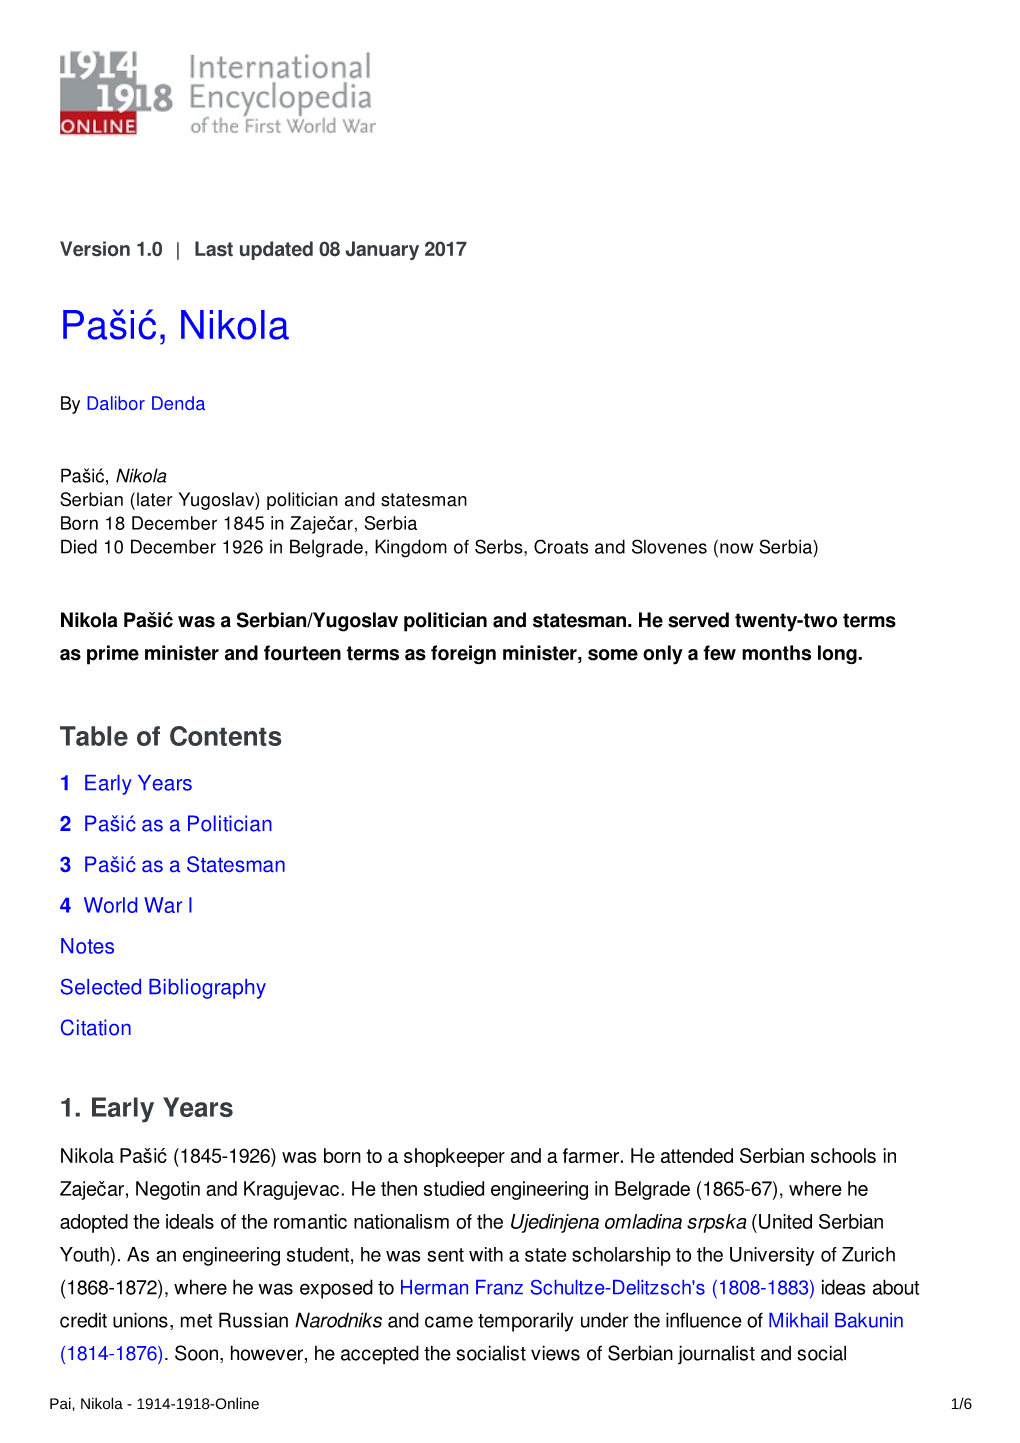 Pašić, Nikola | International Encyclopedia of the First World War